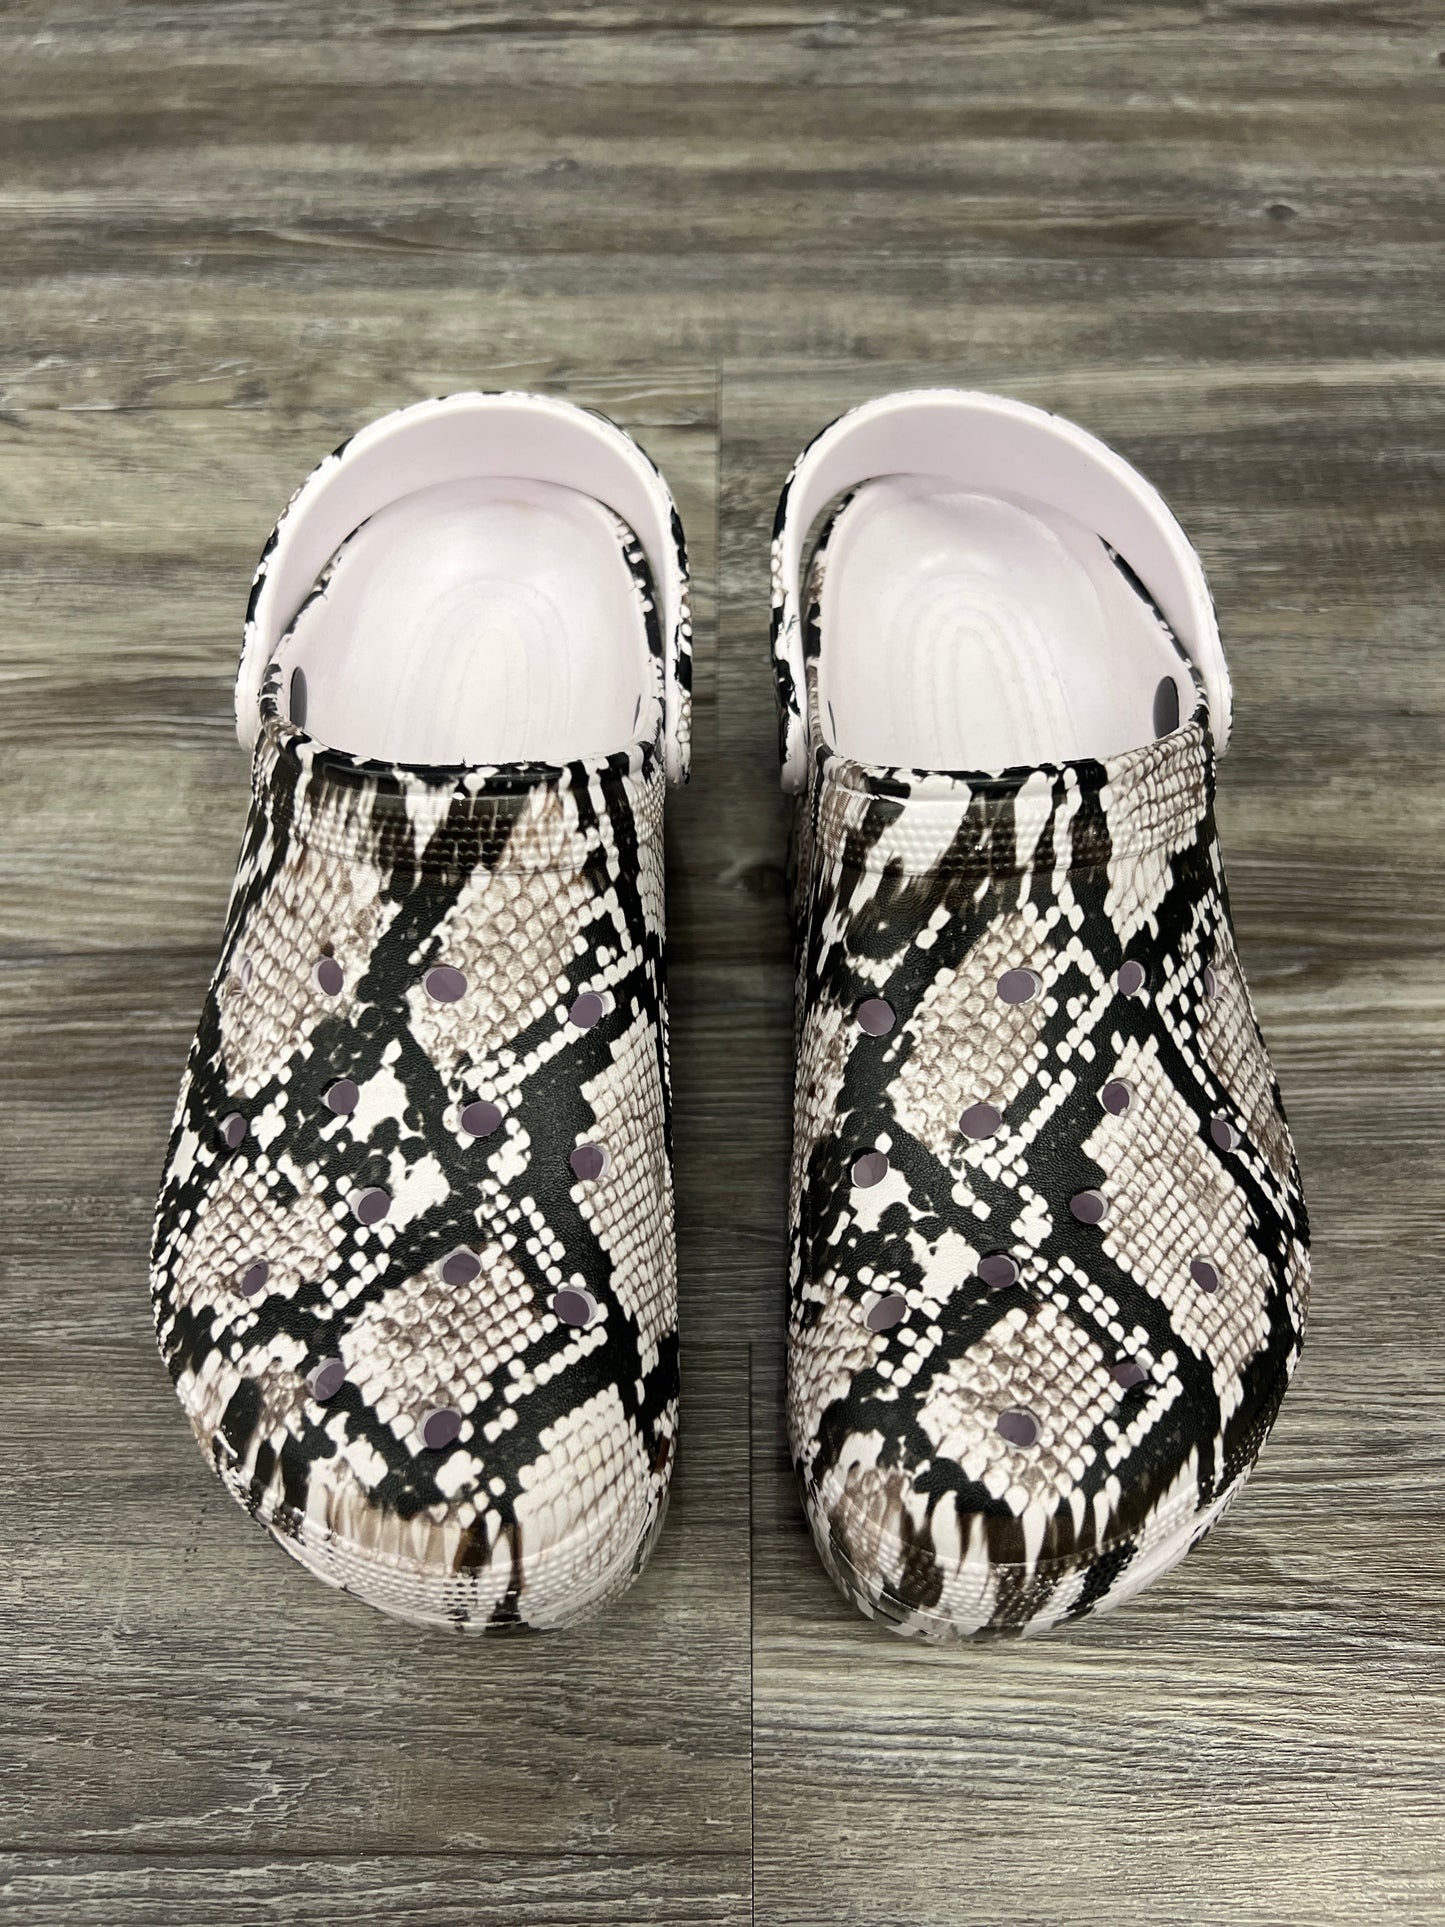 Snakeskin Print Shoes Heels Platform Crocs, Size 8.5